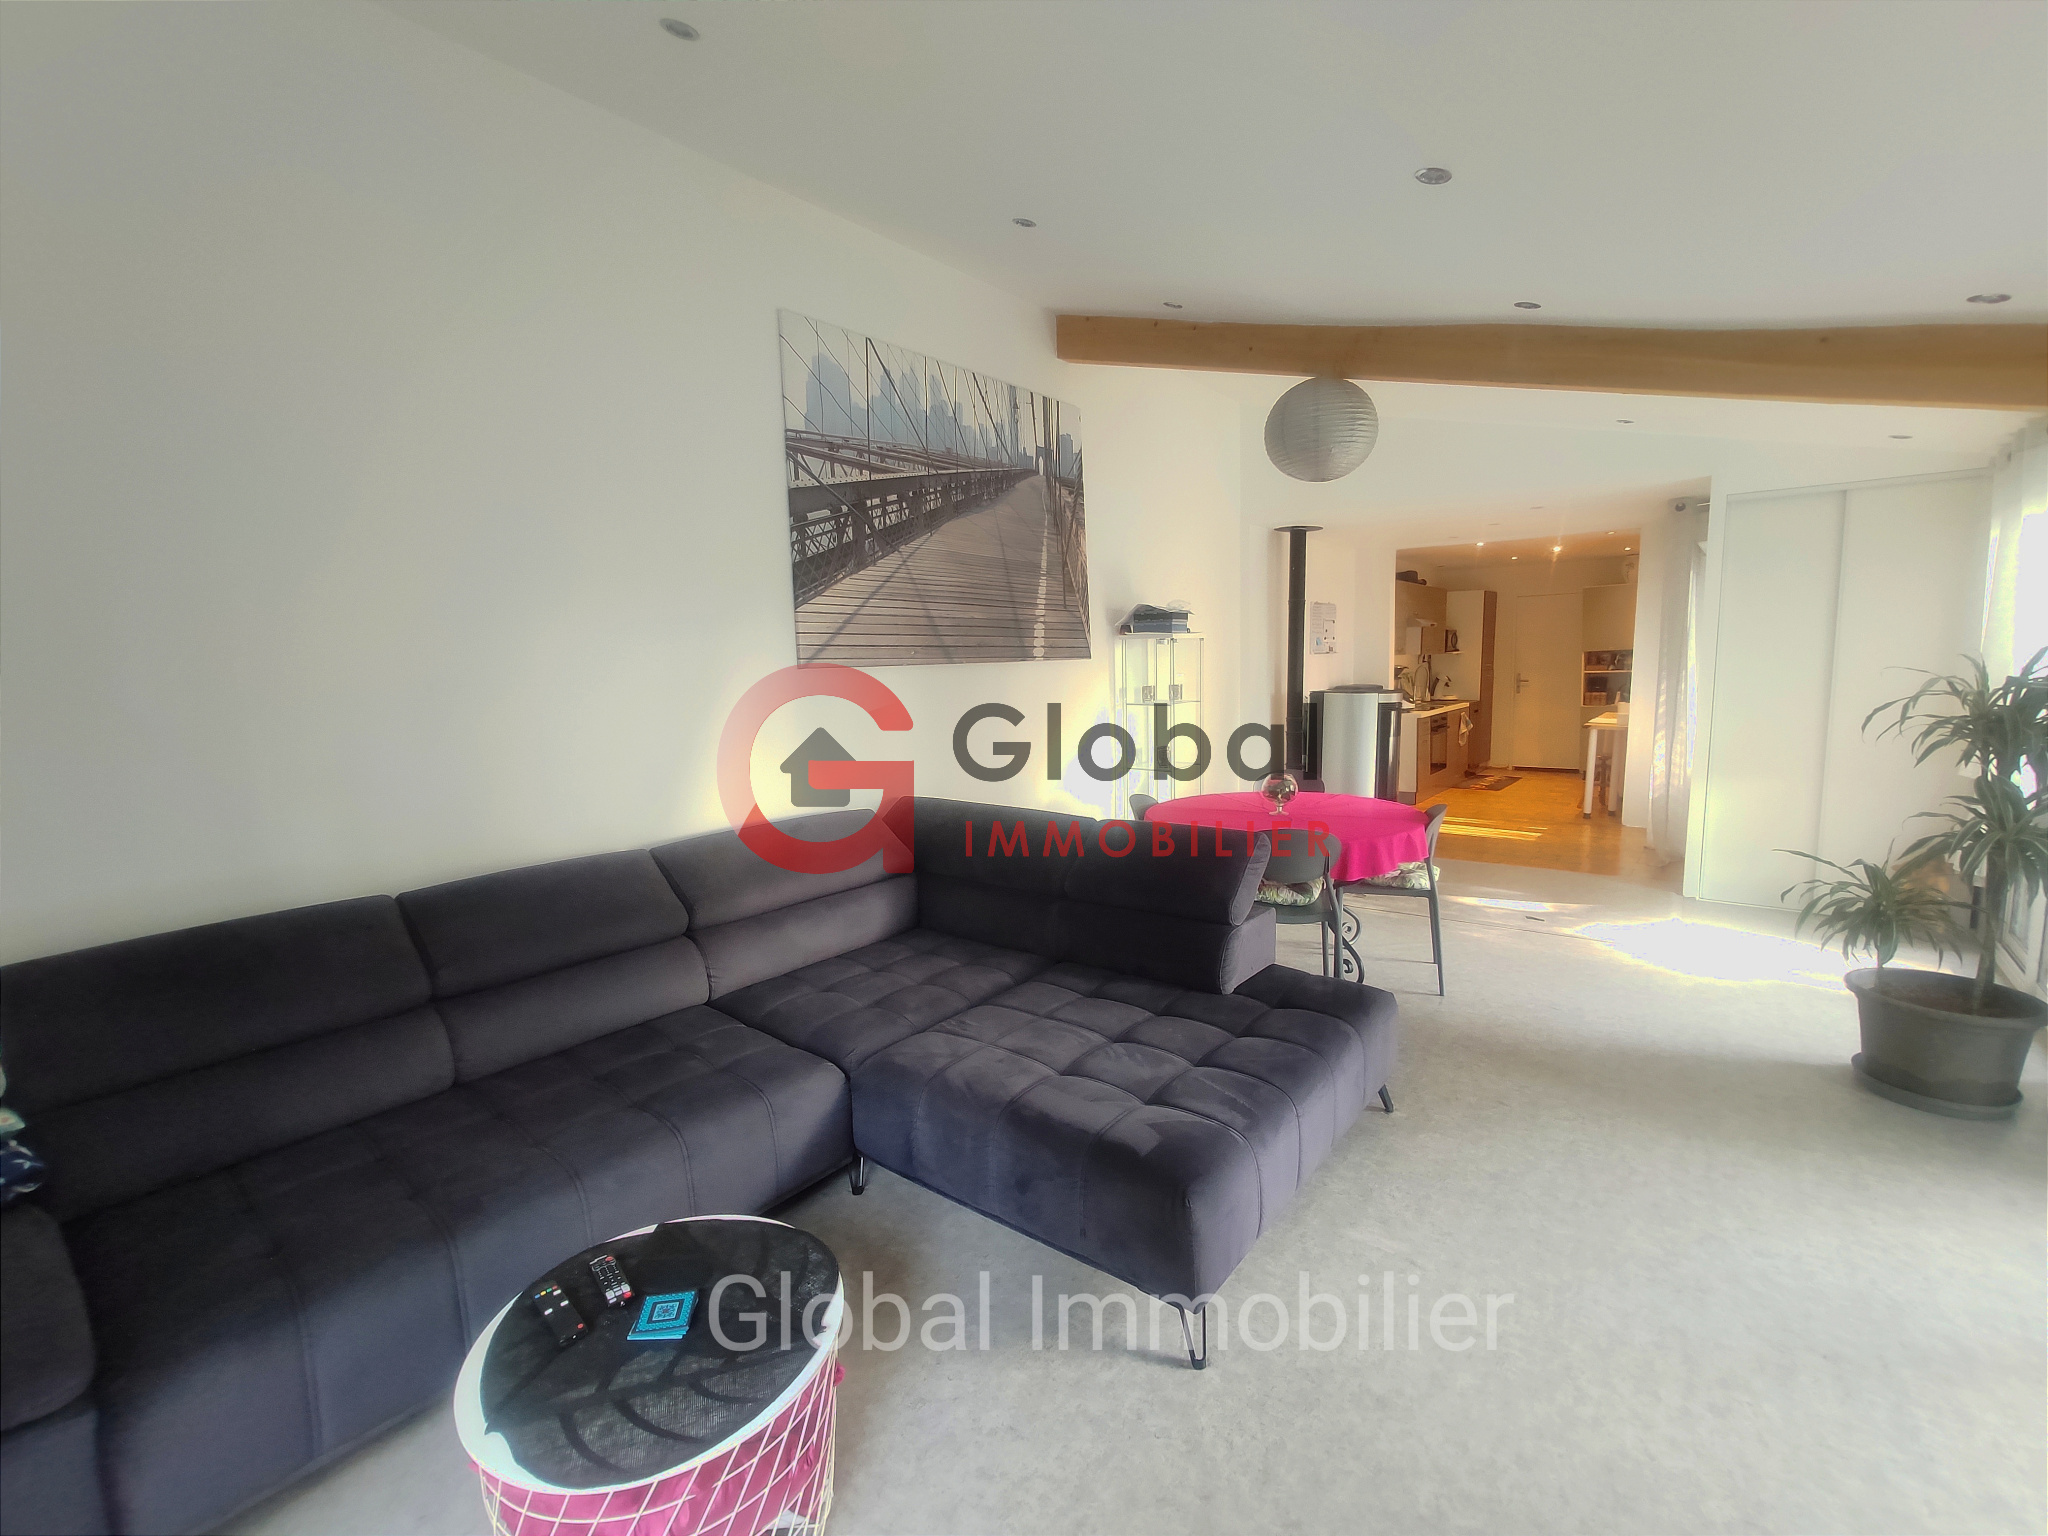 Vente Maison 120m² 5 Pièces à Meximieux (01800) - Global Immobilier